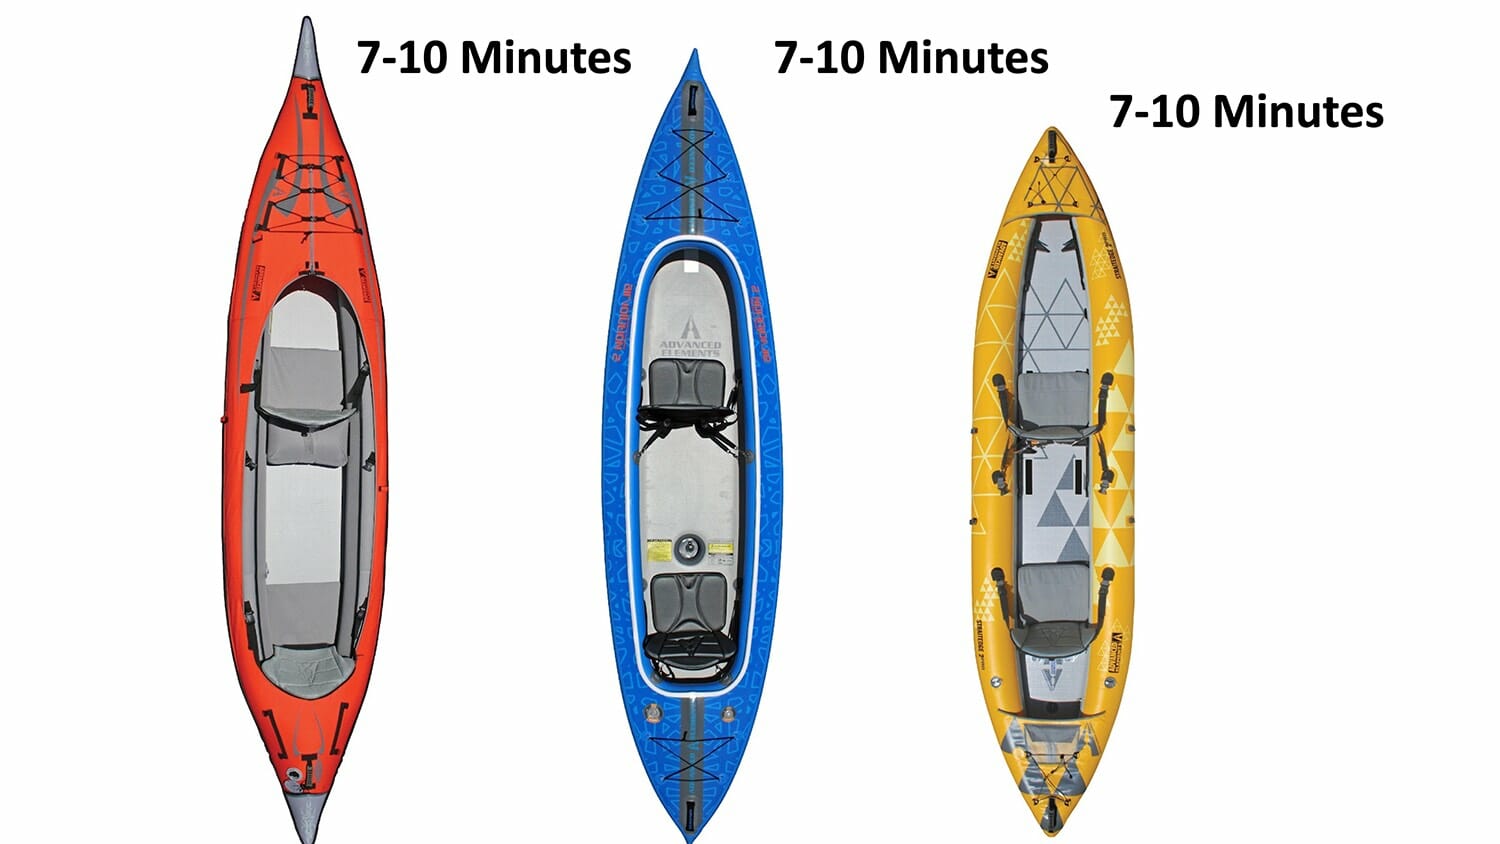 tandem kayaks